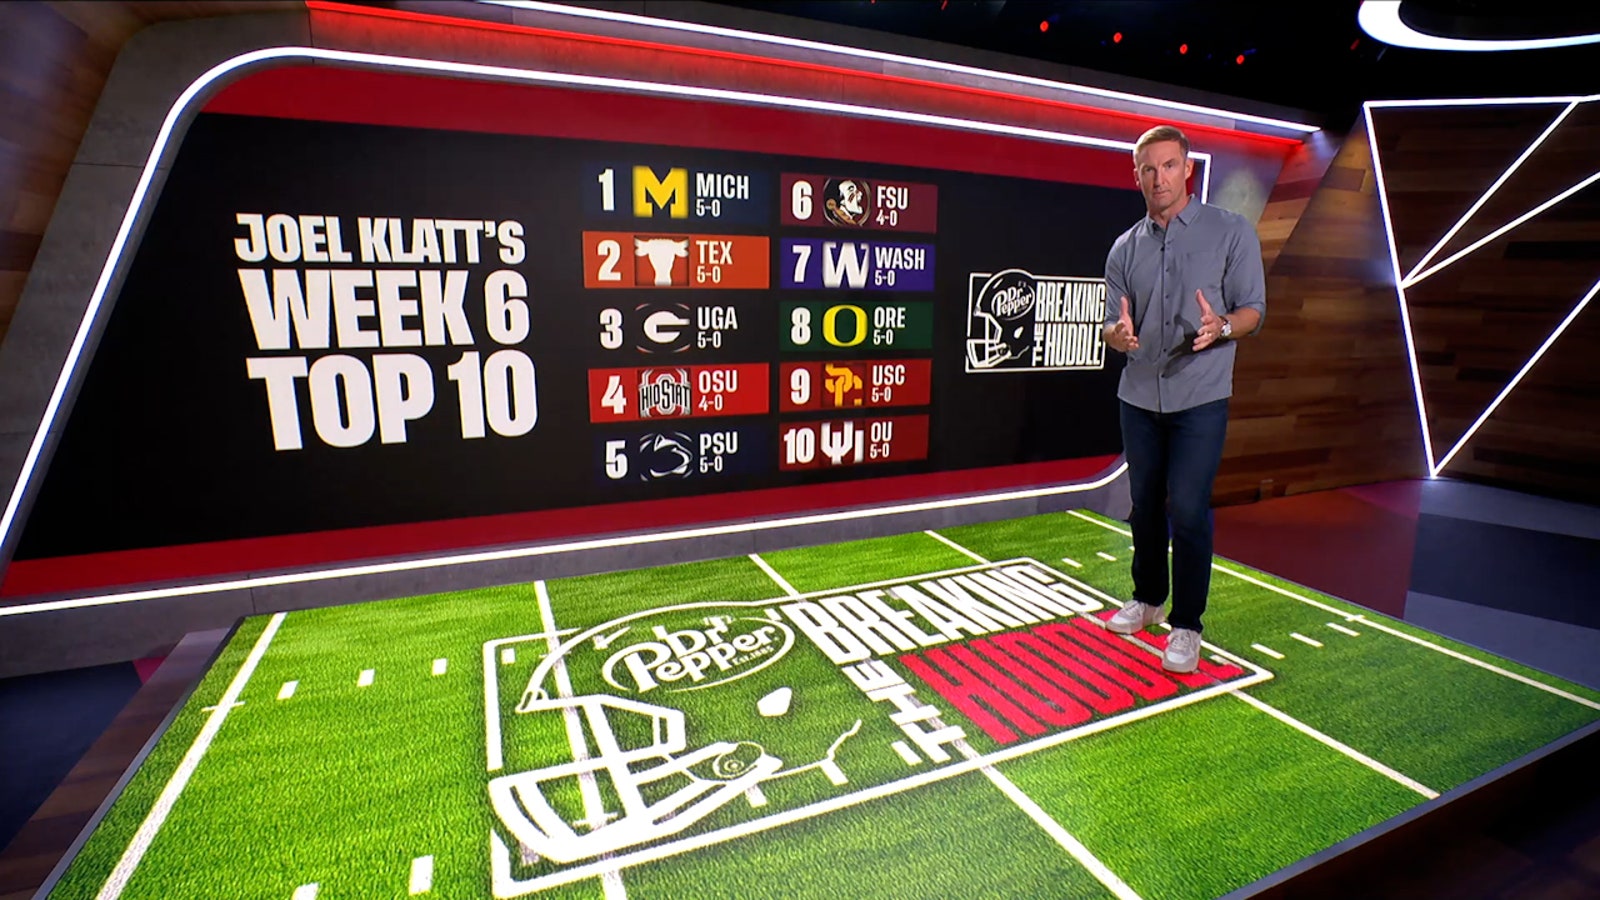 Joel Klatt's Top 10 teams for Week 6